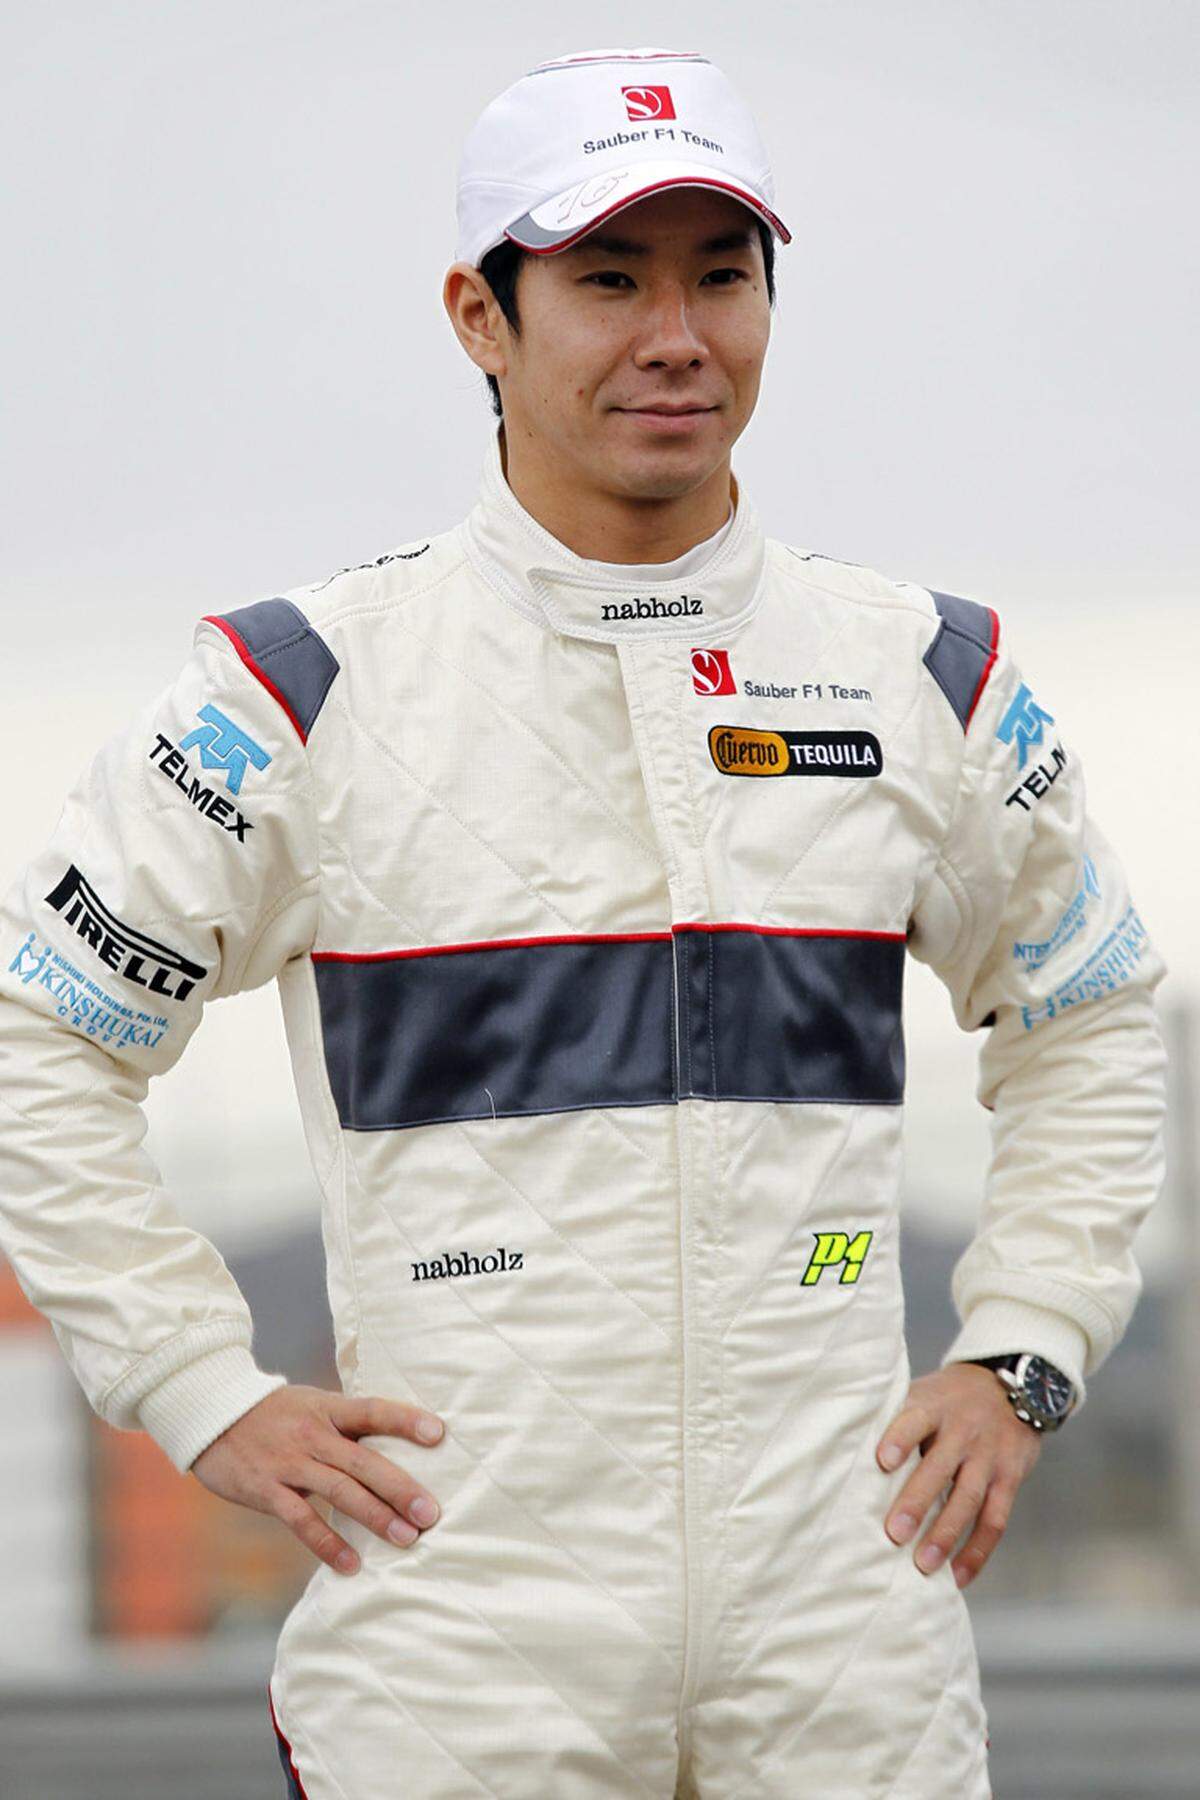 Kamui Kobayashi (JPN)  Geboren: 13. September 1986 in Amagasaki  Erster Grand Prix: 18. Oktober 2009 Brasilien  GP-Starts: 21  GP-Siege: 0  Bisherige Teams: Toyota (2009)  Größte Erfolge: Zweimal Platz sechs